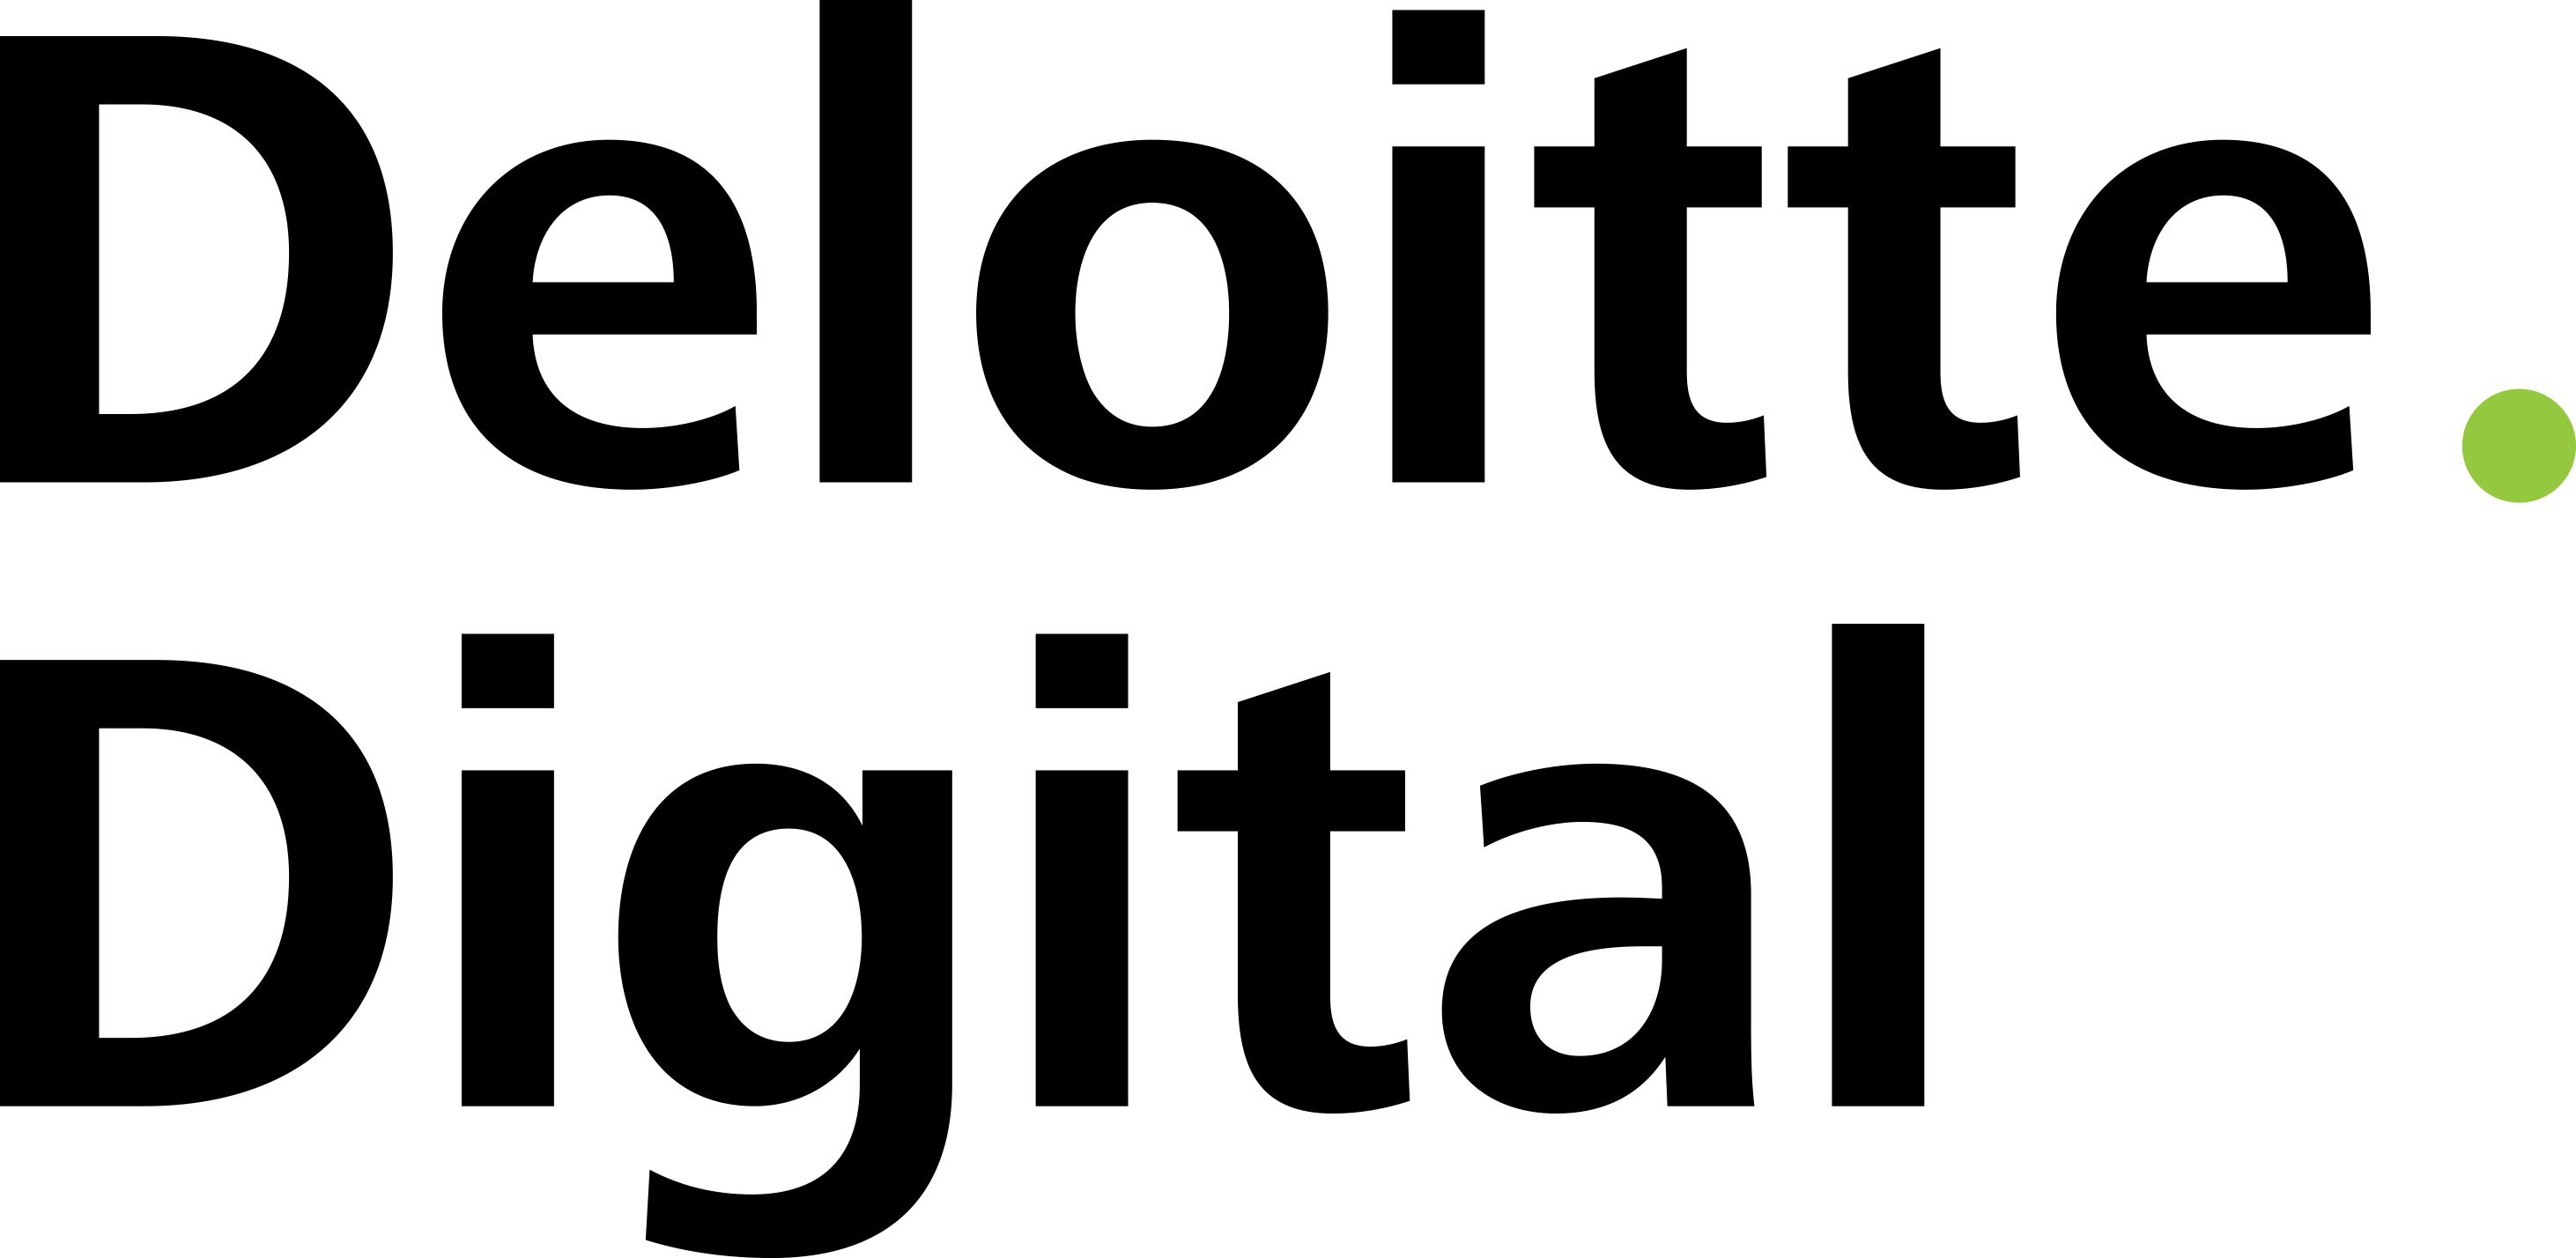 Deloitte Digital Logo - Deloitte Digital